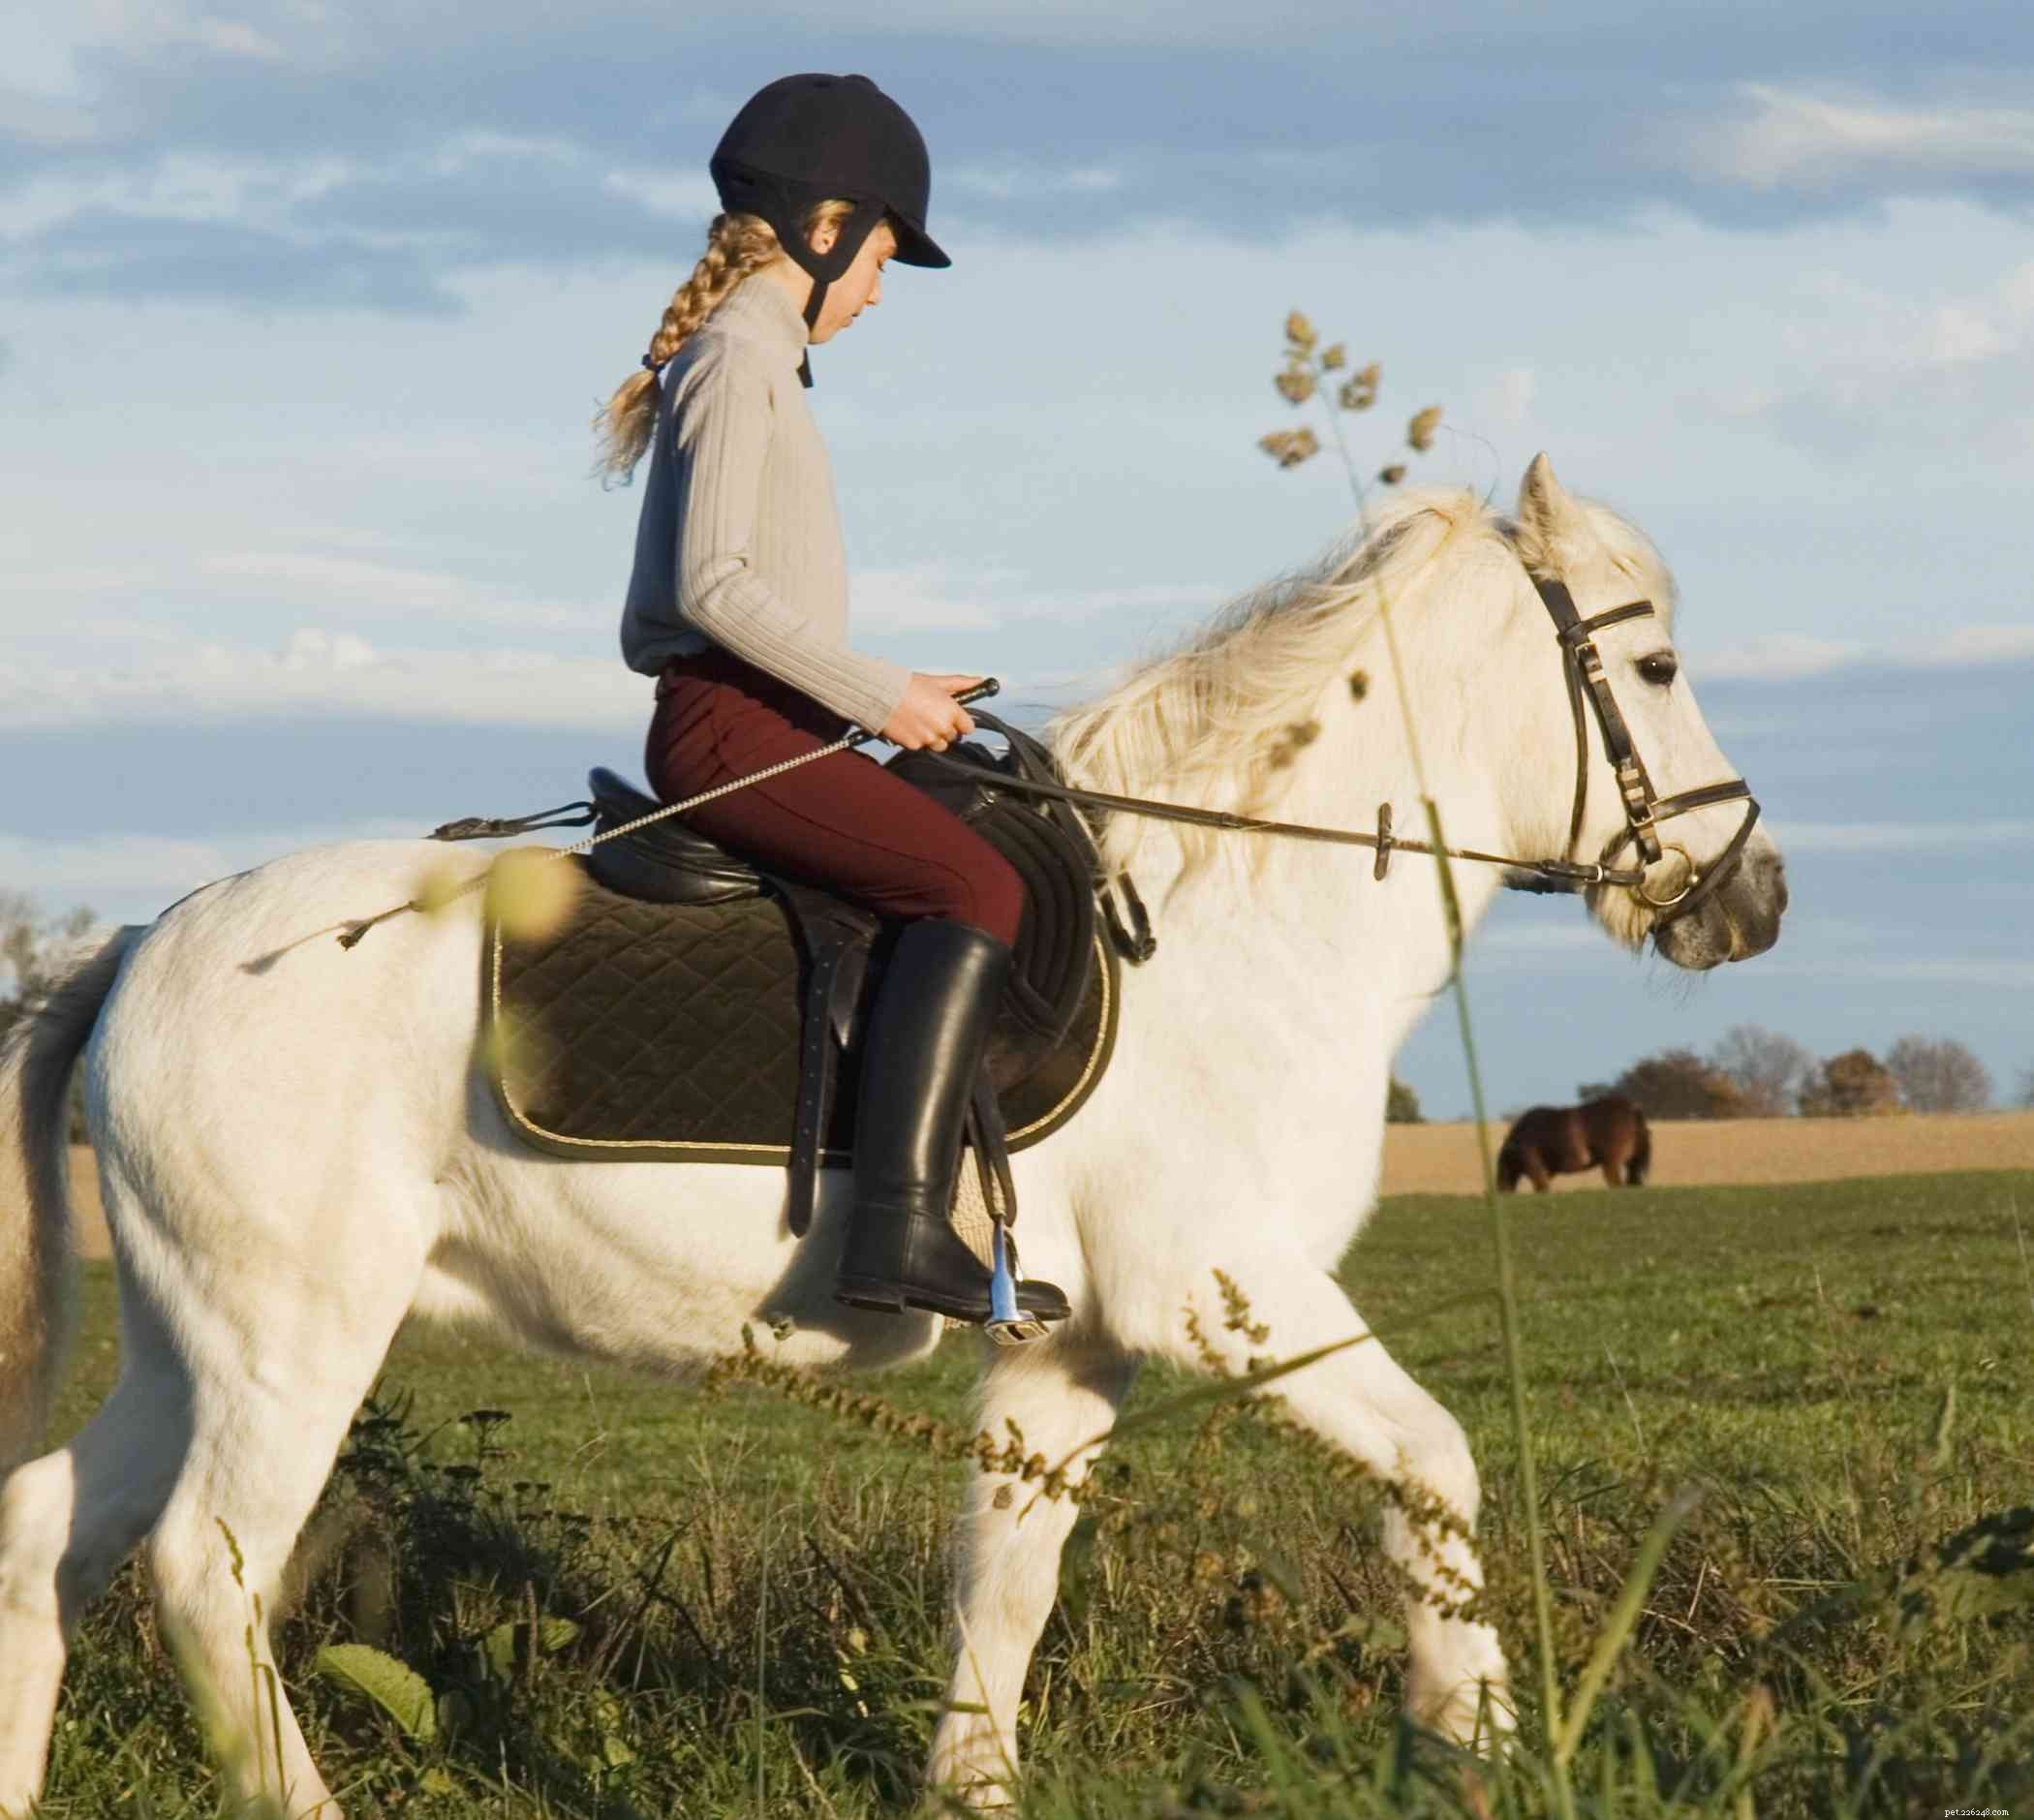 Punire il tuo cavallo:cosa funziona e cosa non funziona